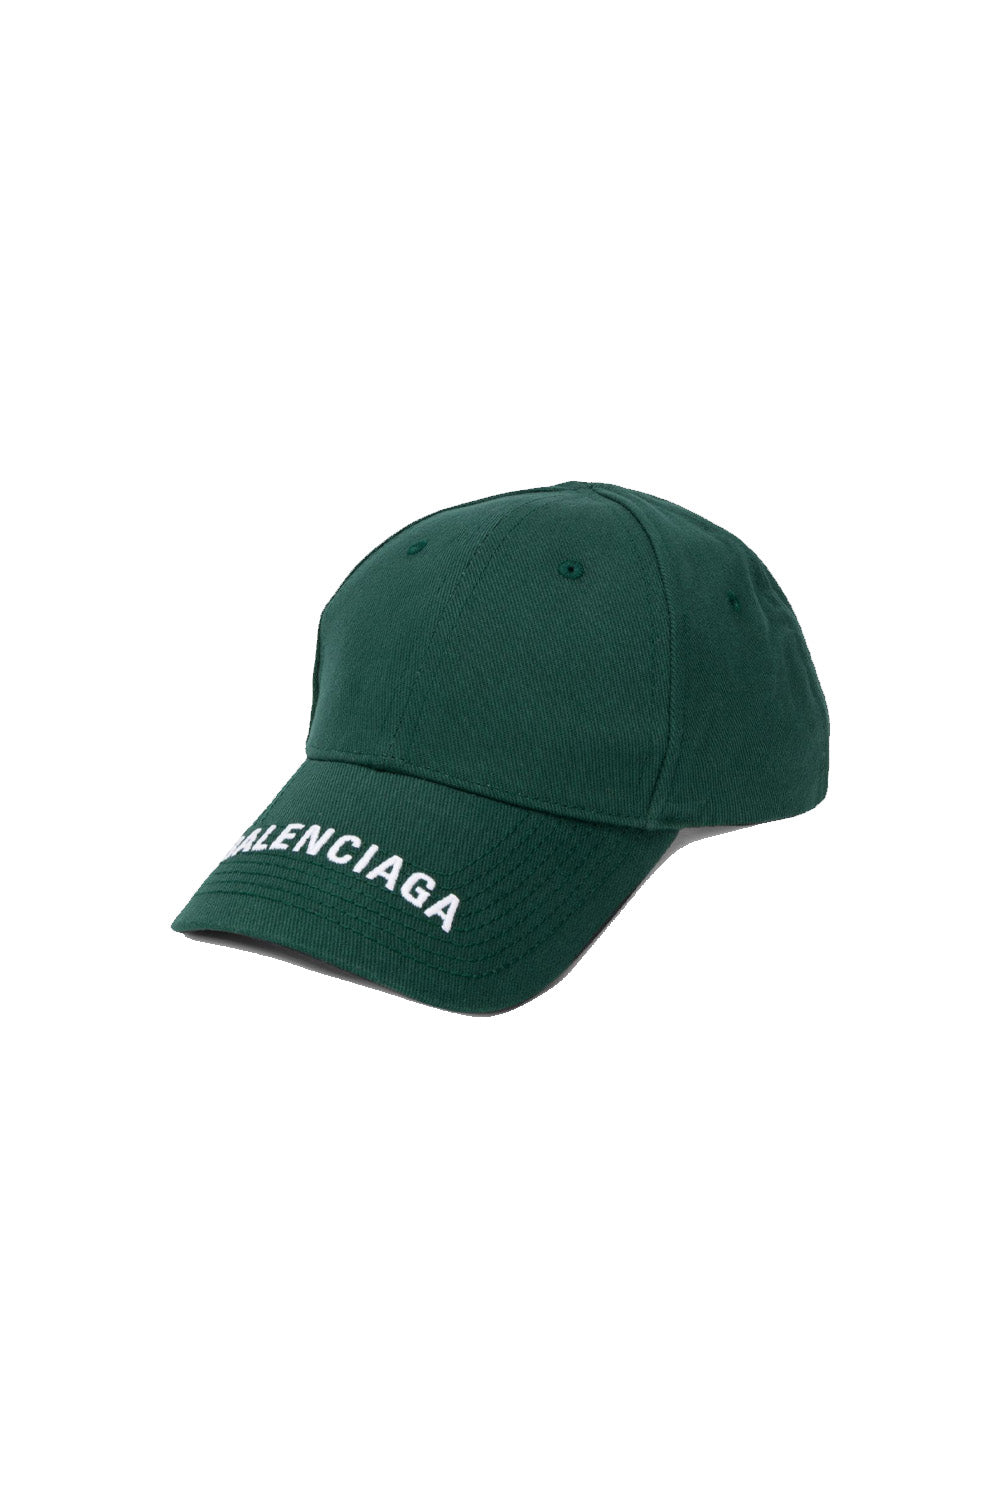 Balenciaga baseball cap green